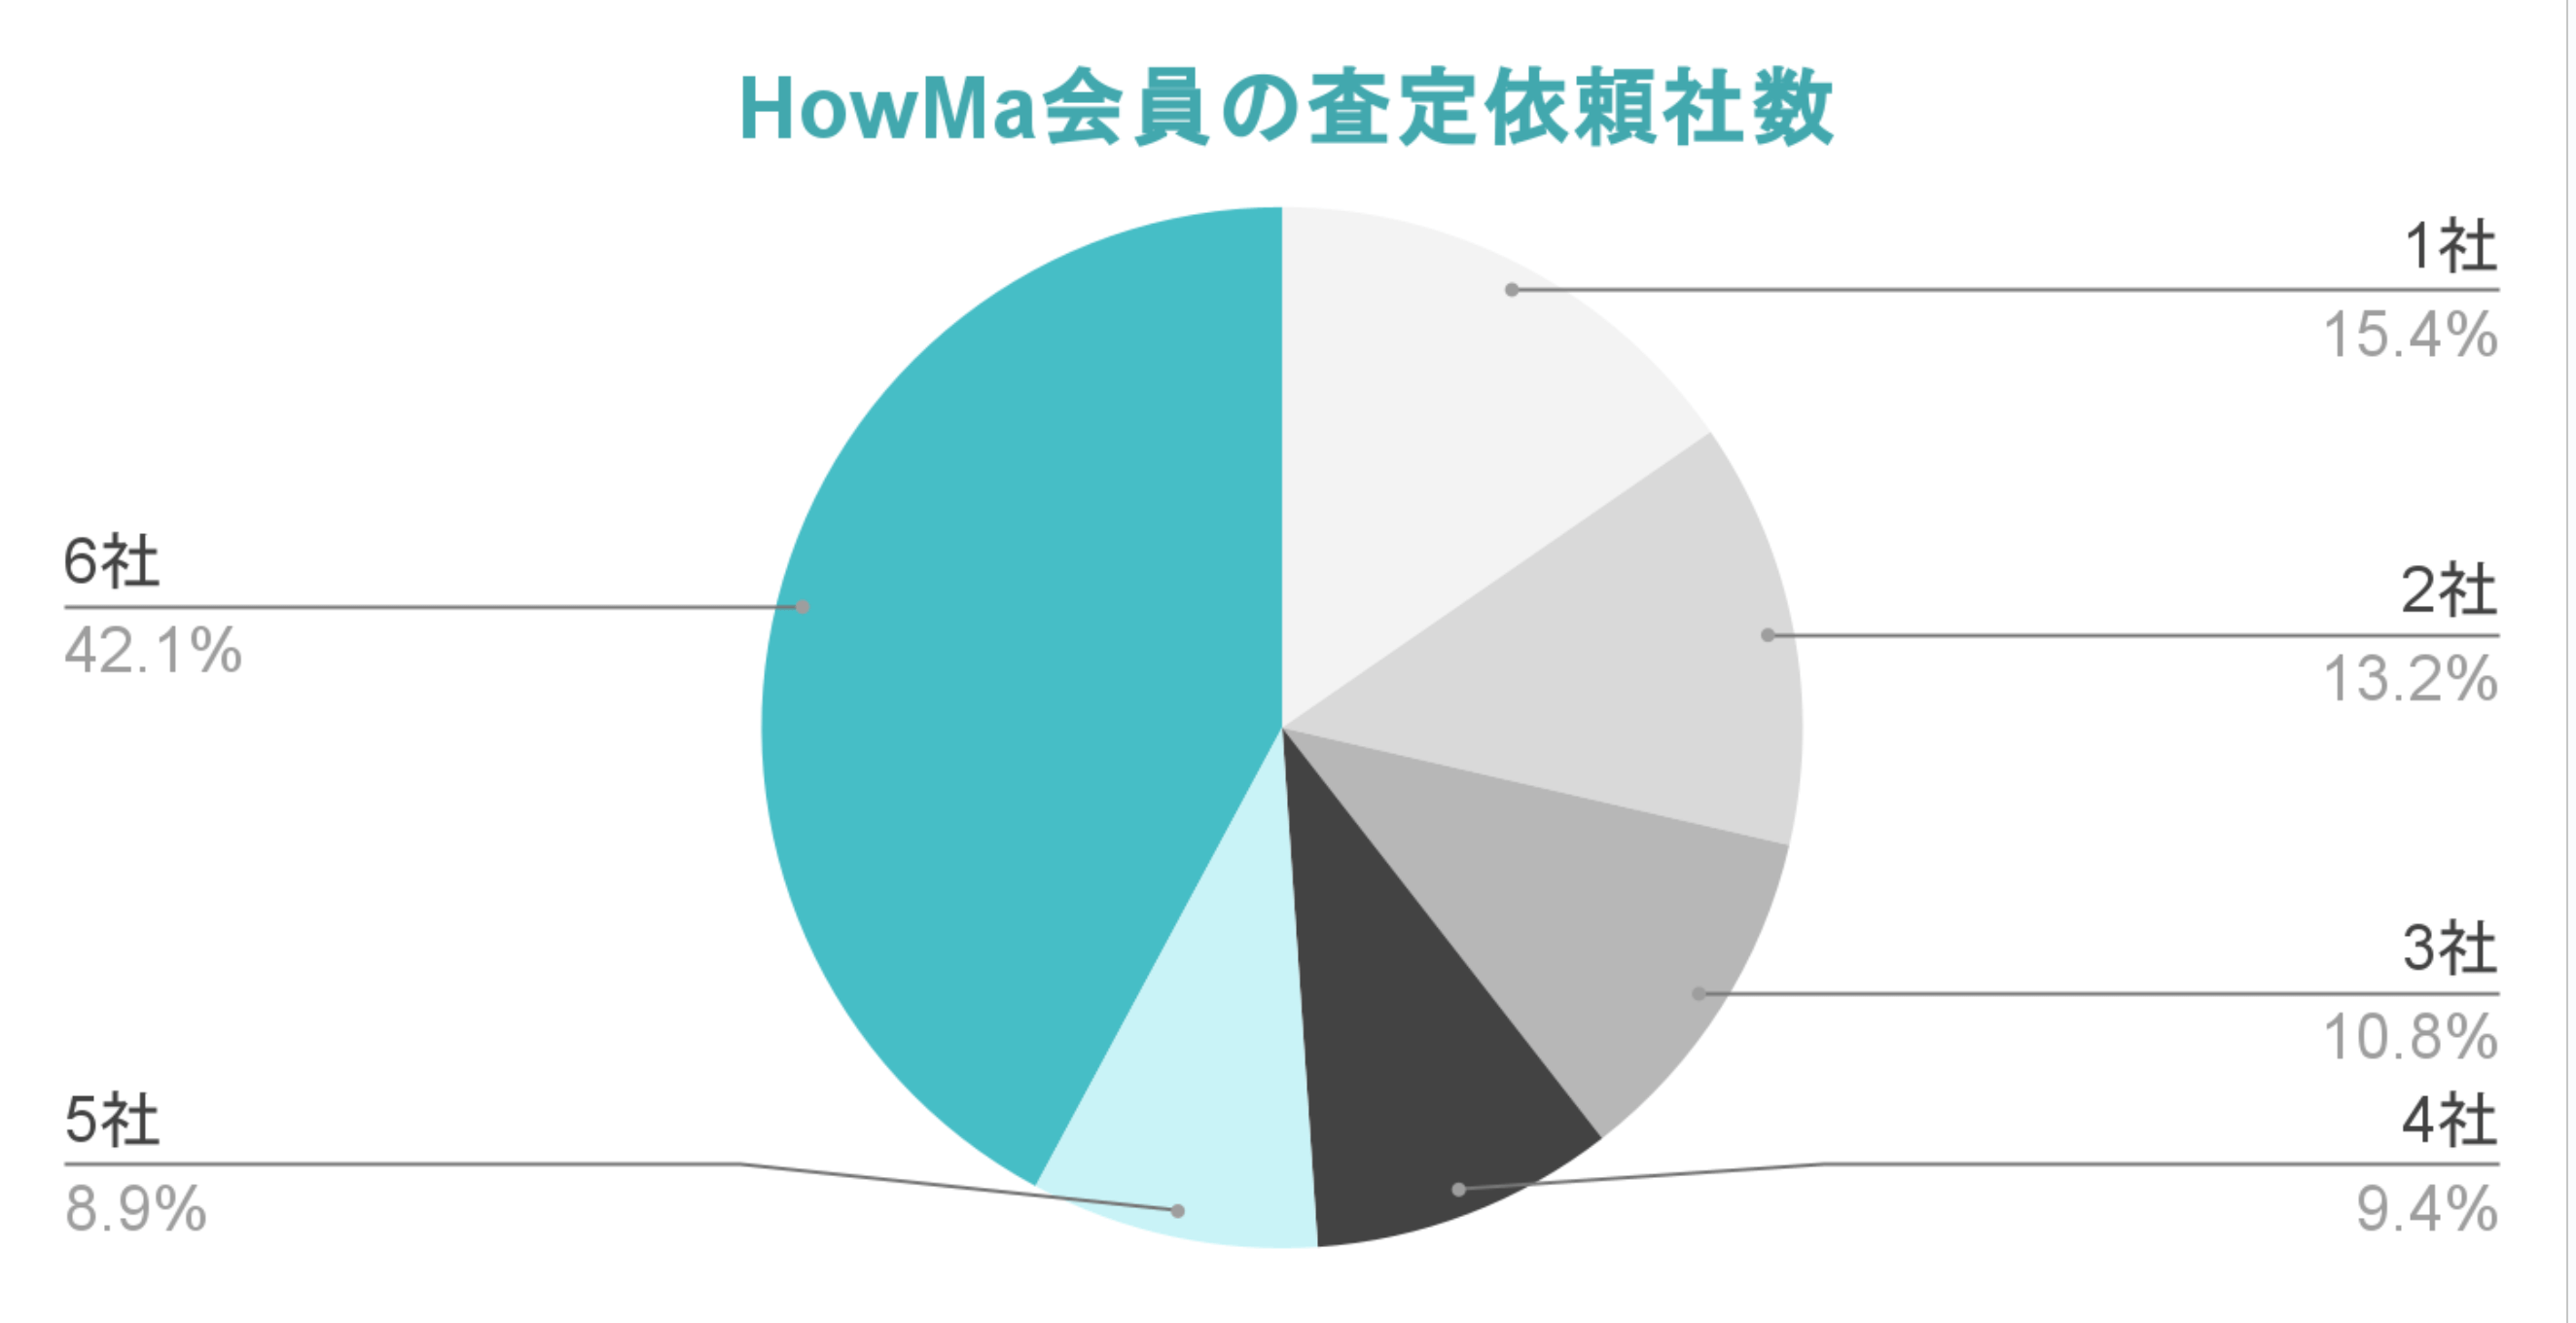 グラフ：HowMa会員の査定依頼社数 「1社」15%、「2社」13.2%、「3社」10.8%、「4社」9.4%、「5社」8.9%、「6社」42.1%